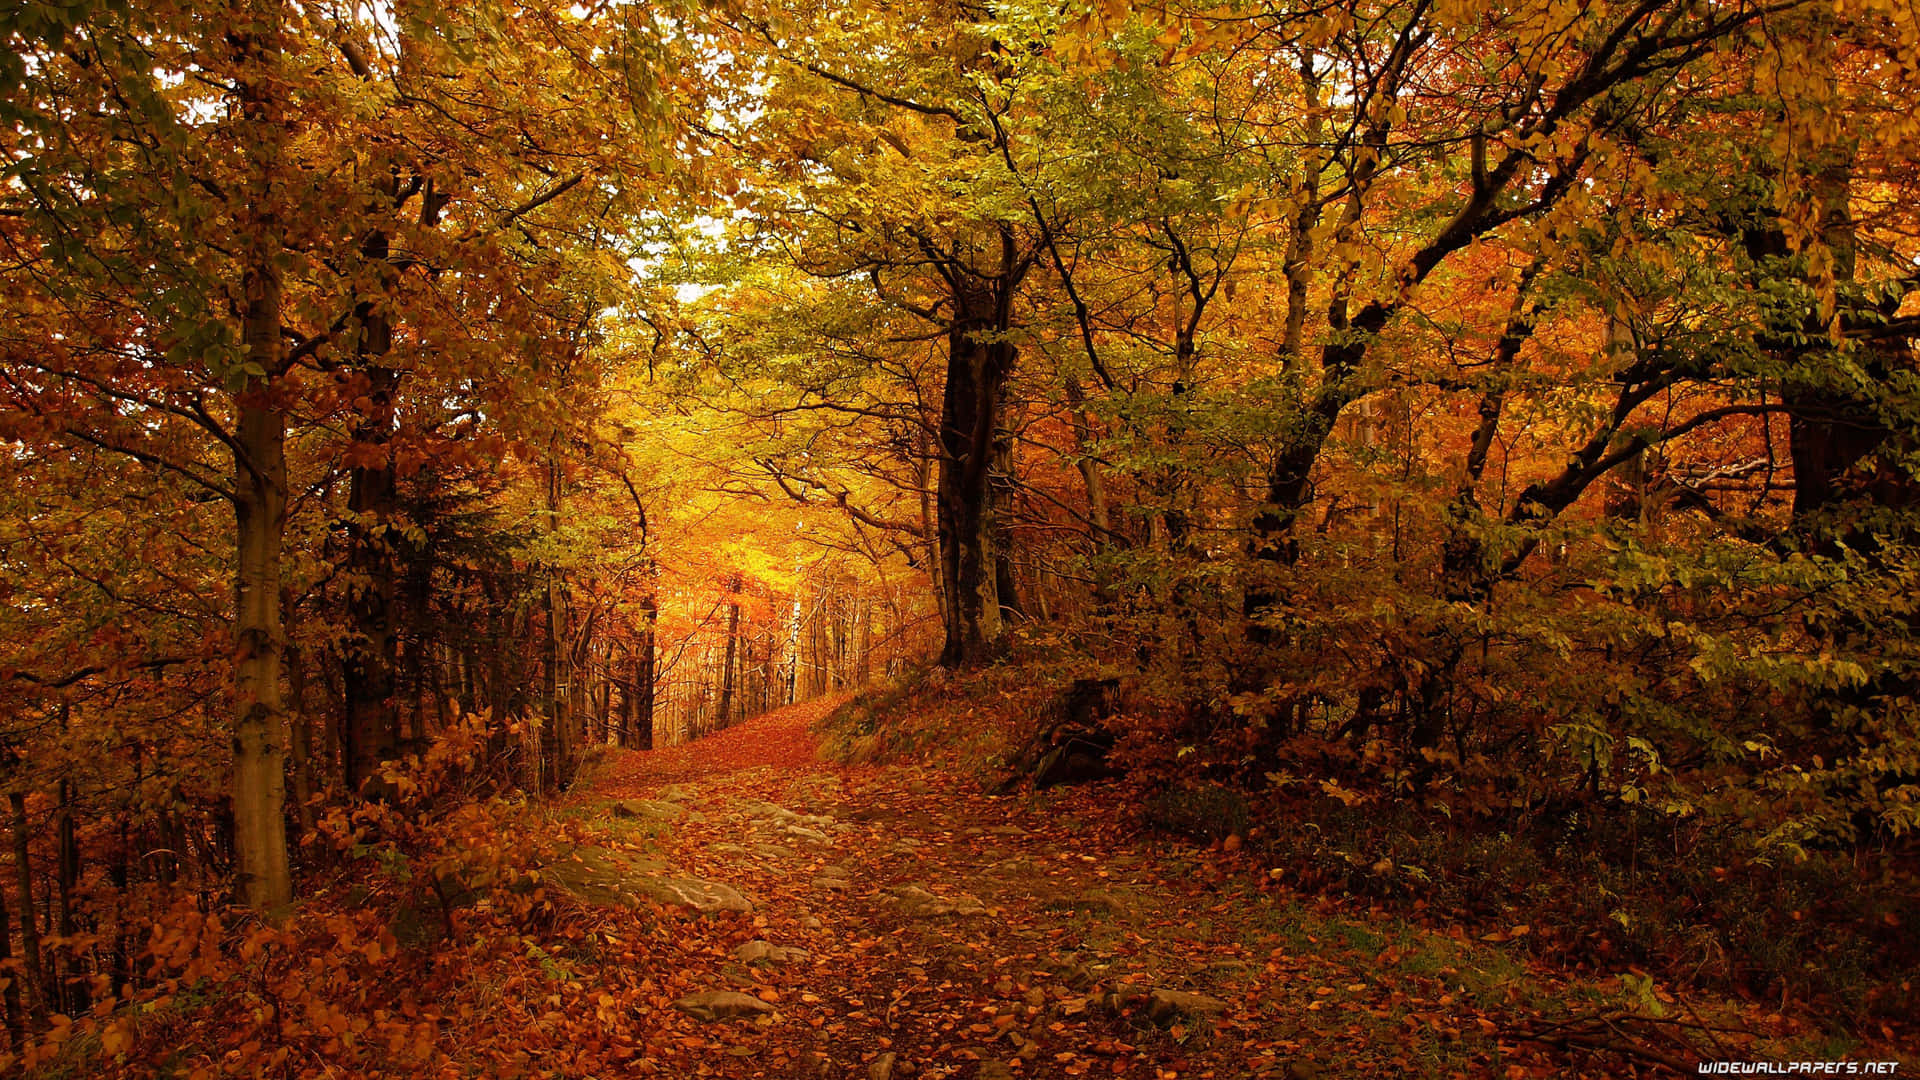 Nyd skønheden i efteråret med et foto i 3840 x 2160 af en farverig høst. Wallpaper